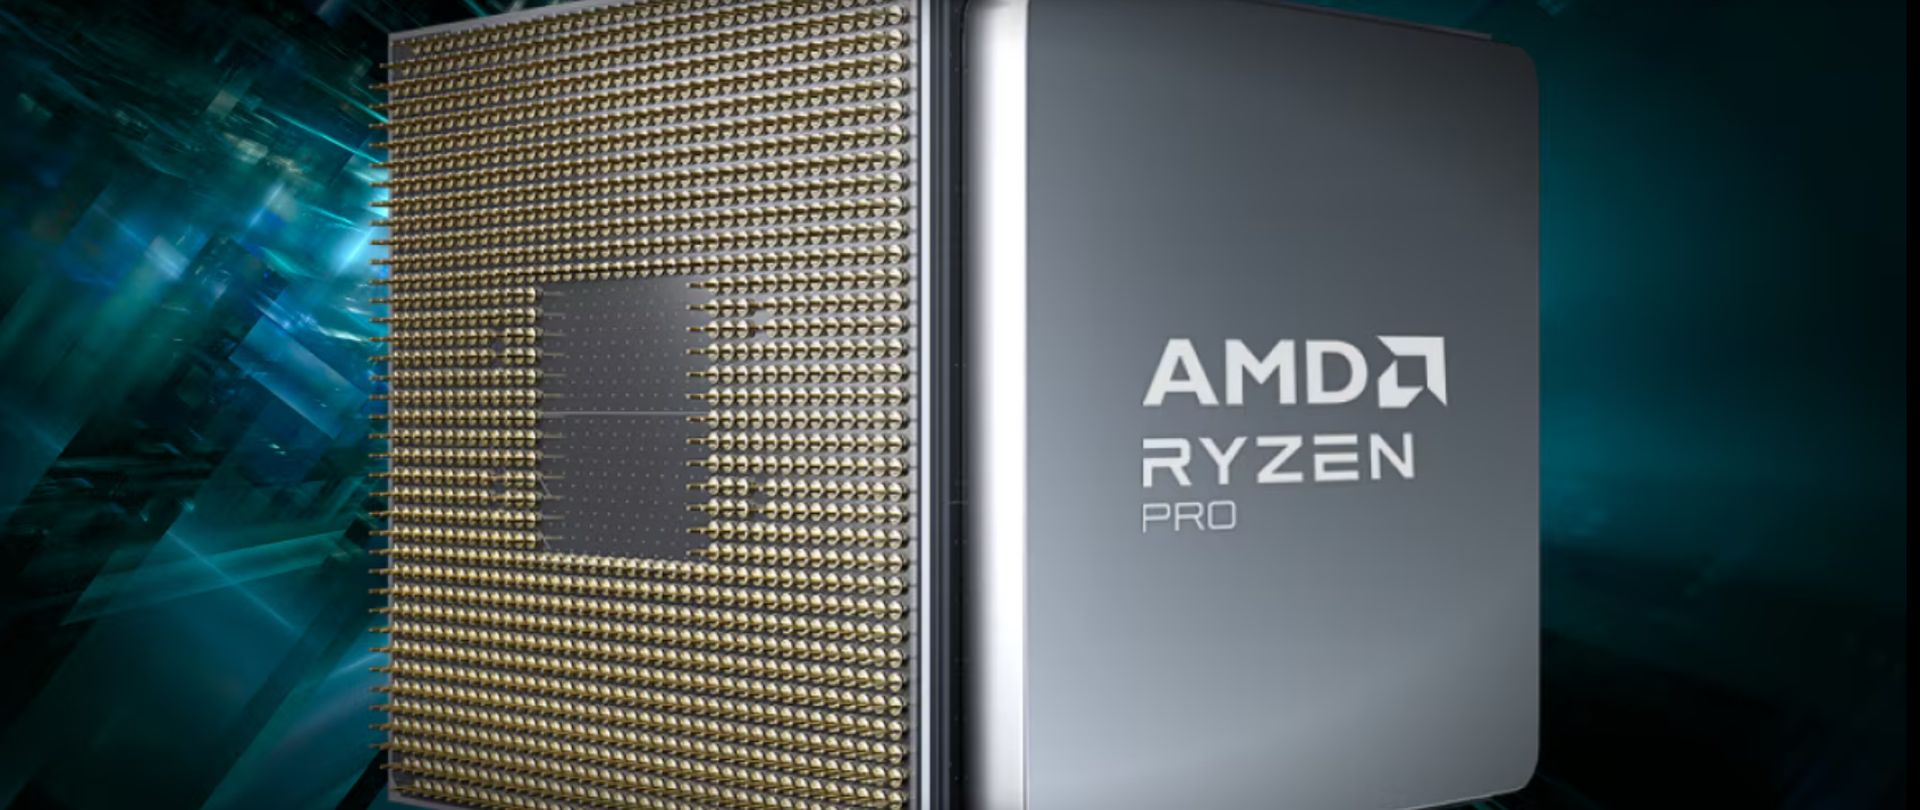 AMD推出Ryzen Pro 8000系列处理器